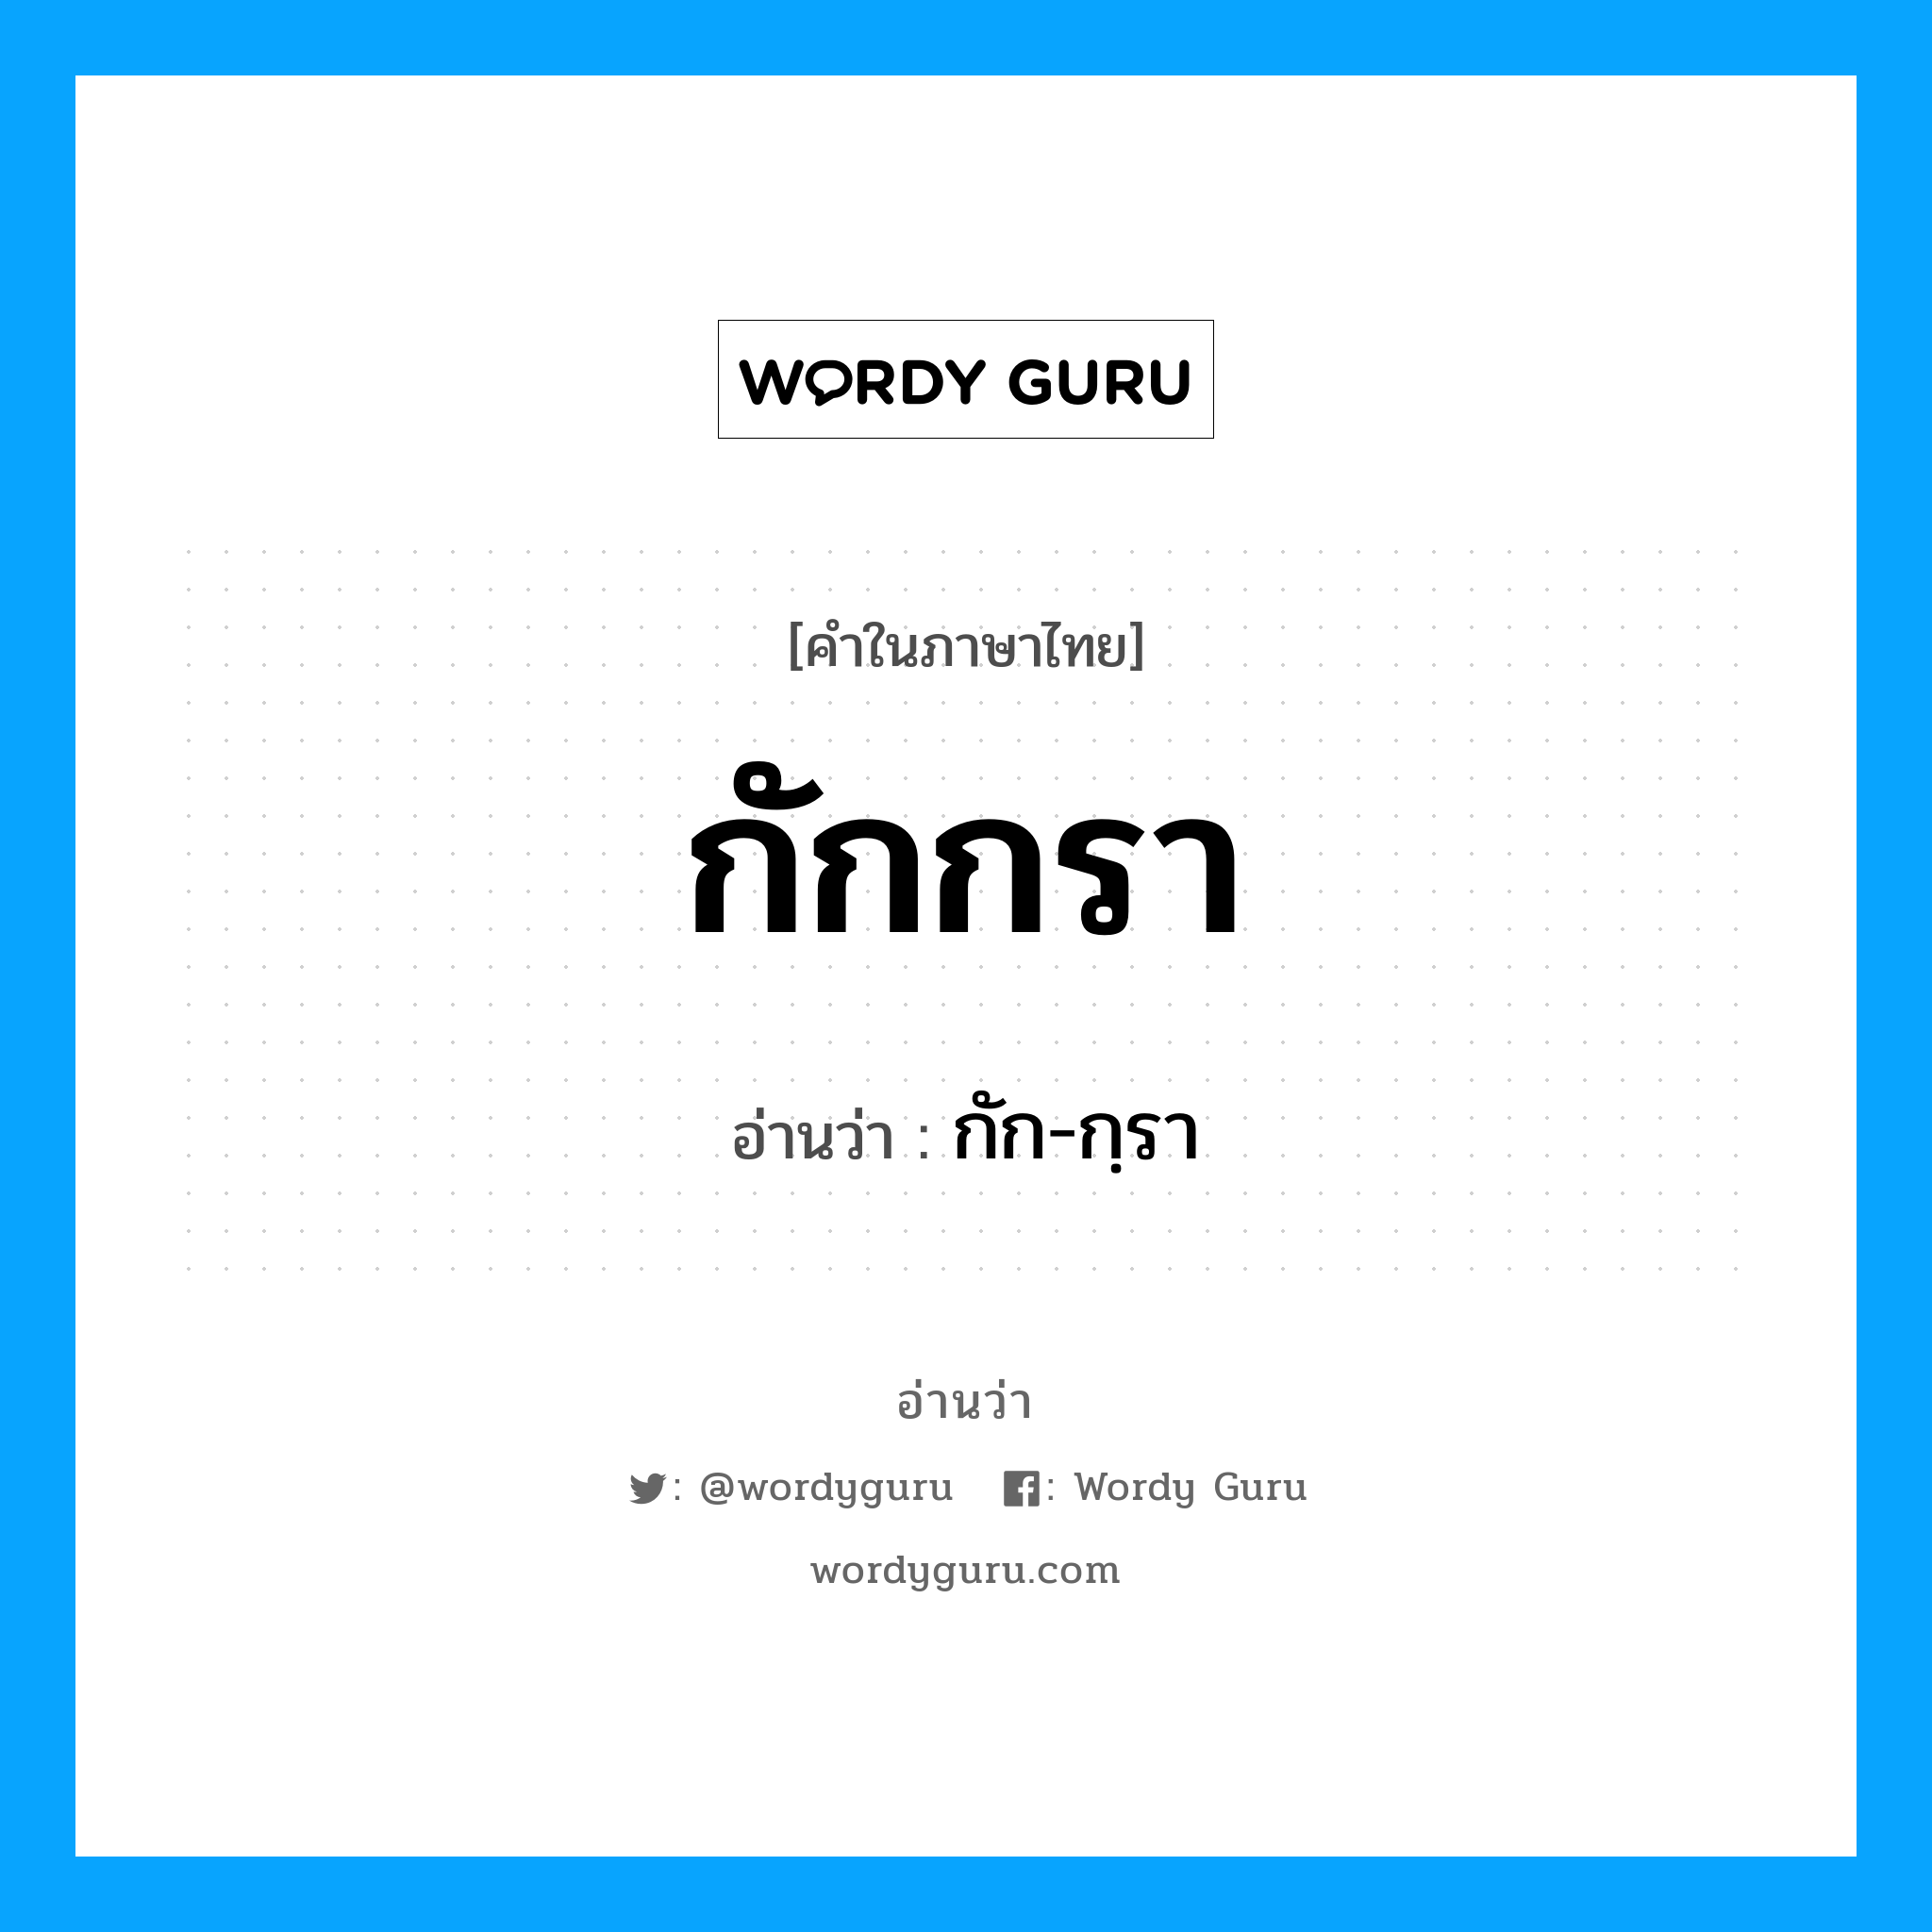 กัก-กฺรา เป็นคำอ่านของคำไหน?, คำในภาษาไทย กัก-กฺรา อ่านว่า กักกรา